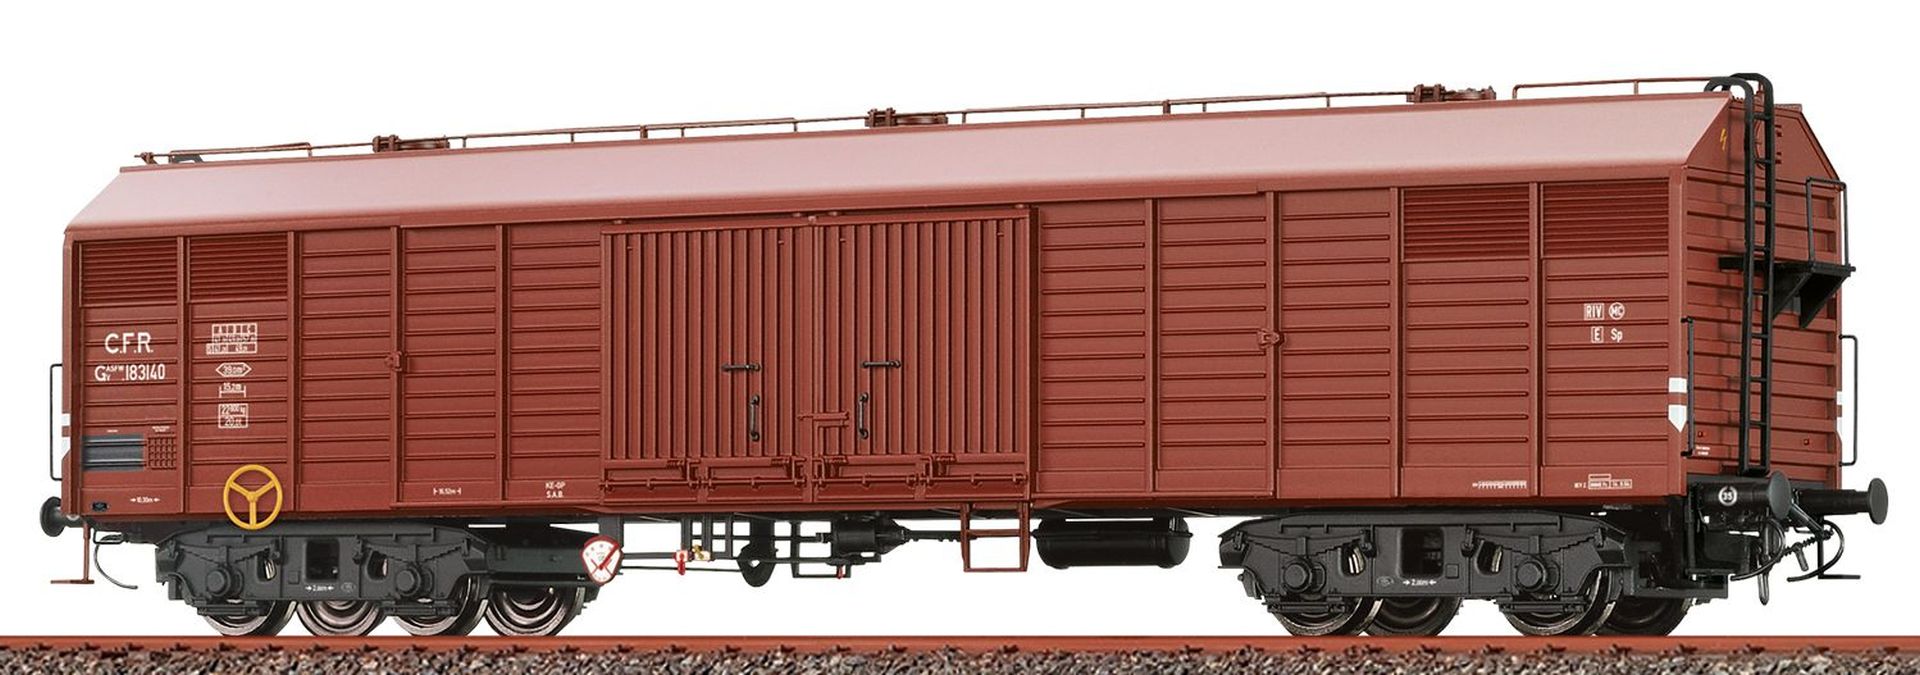 Brawa 50415 - Gedeckter Güterwagen GASFWV, CFR, Ep.III